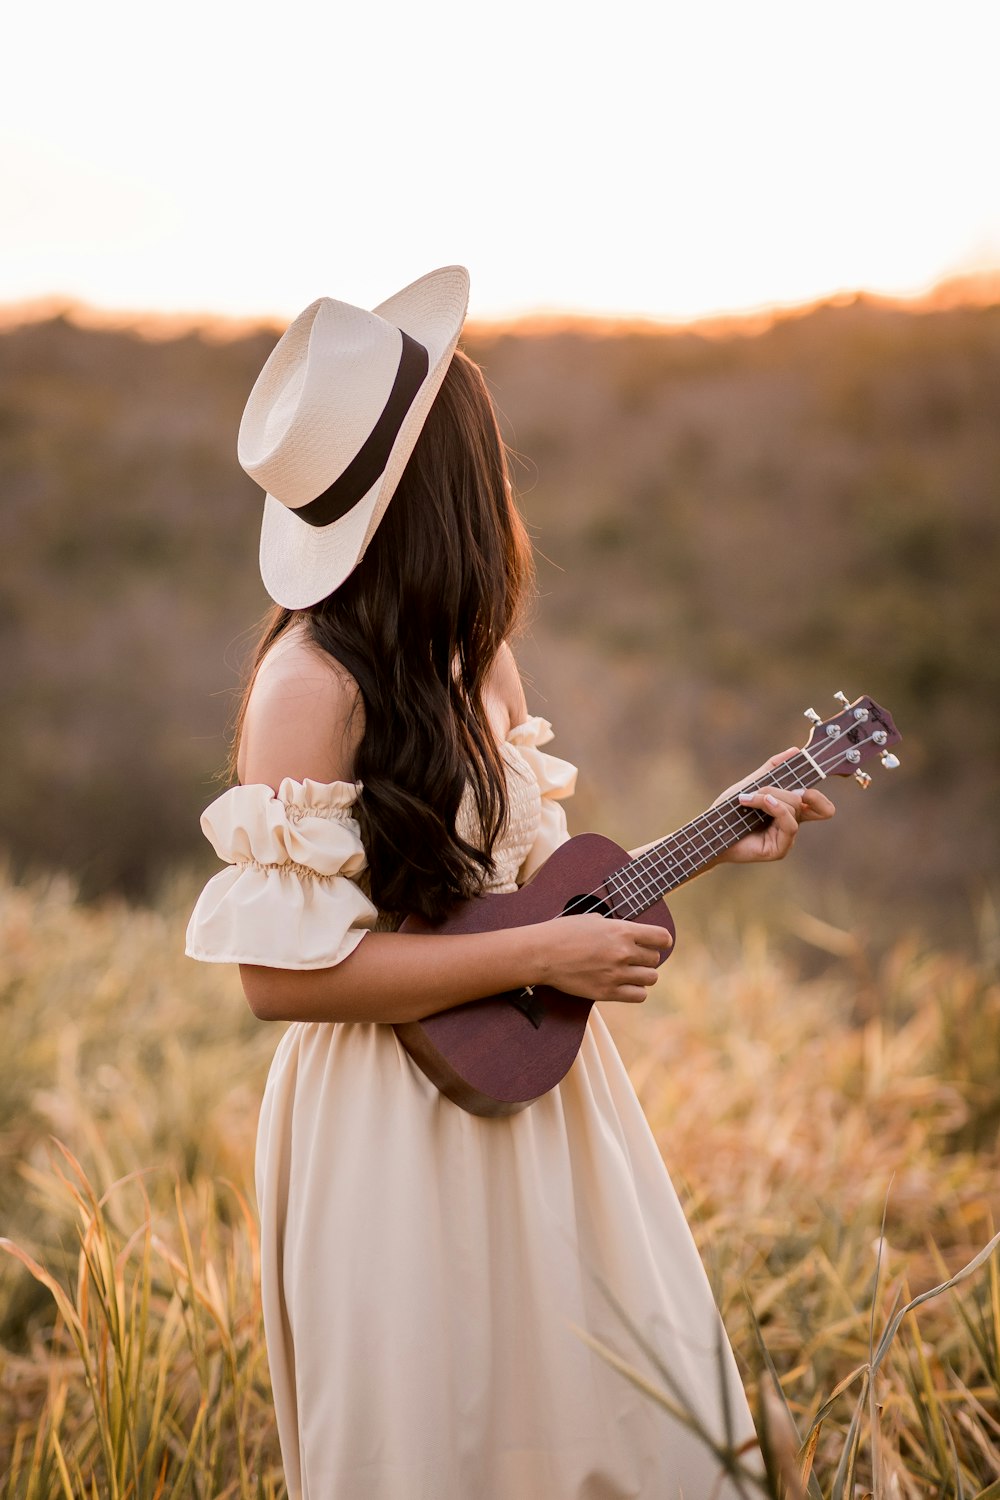 アコースティックギターを弾く白いドレスの女性